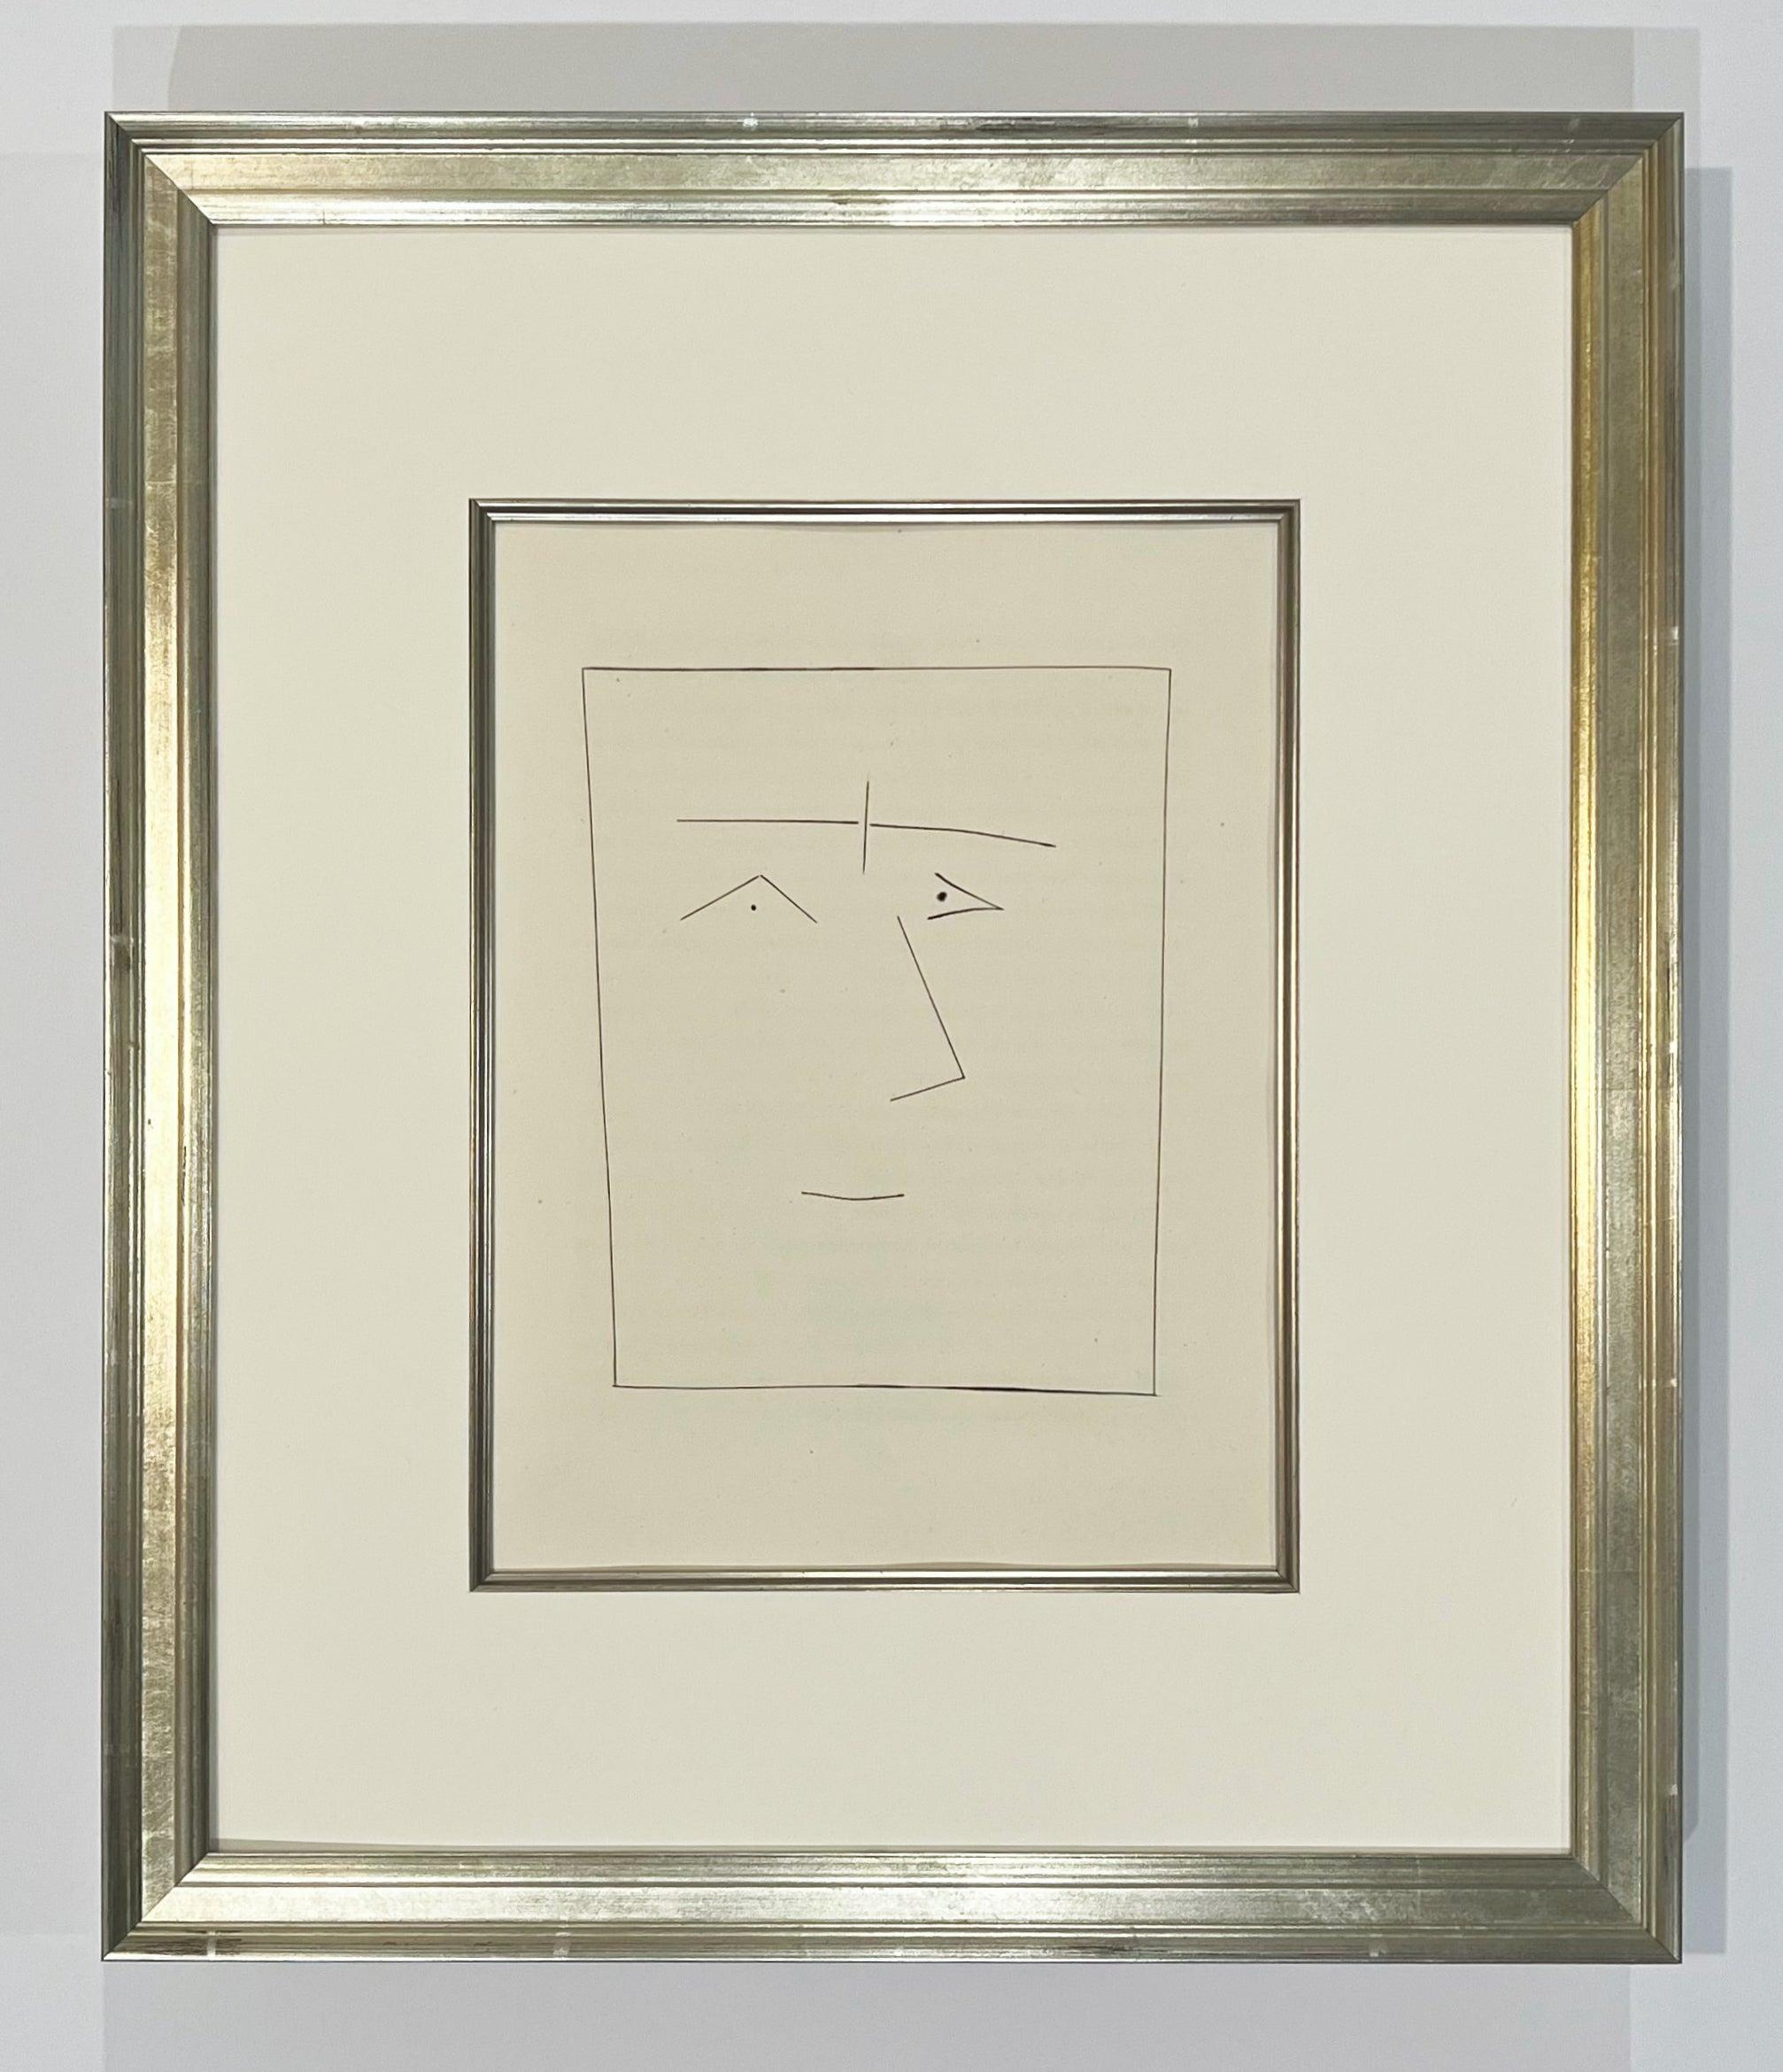 Quadratischer Kopf eines Mannes mit verbundenen Augenbrauen (Teller V), von Carmen – Print von Pablo Picasso